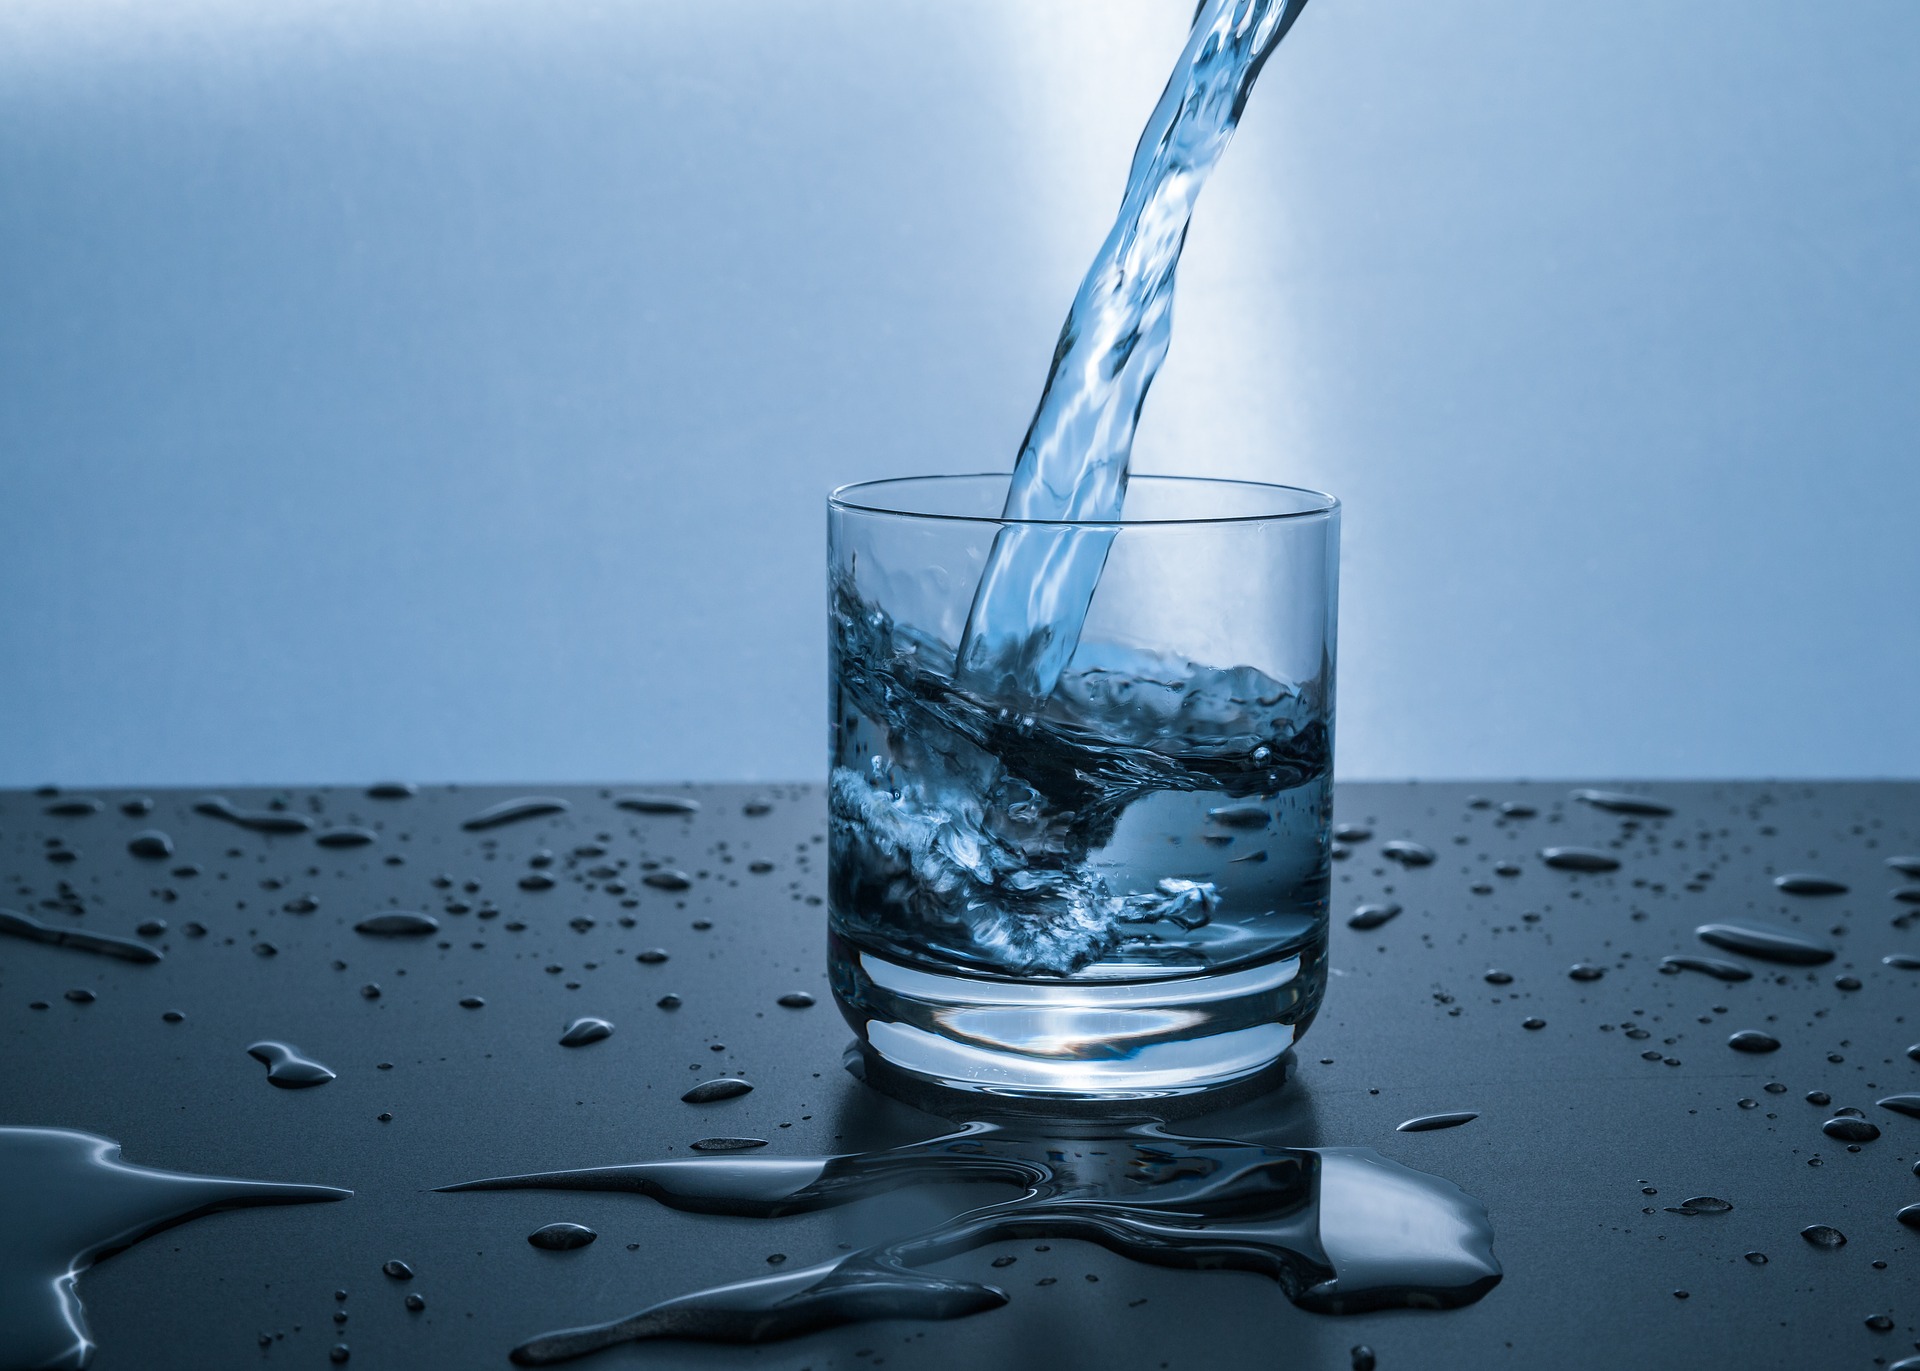 Znk im Trinkwasser - gefährlich oder kein Problem?